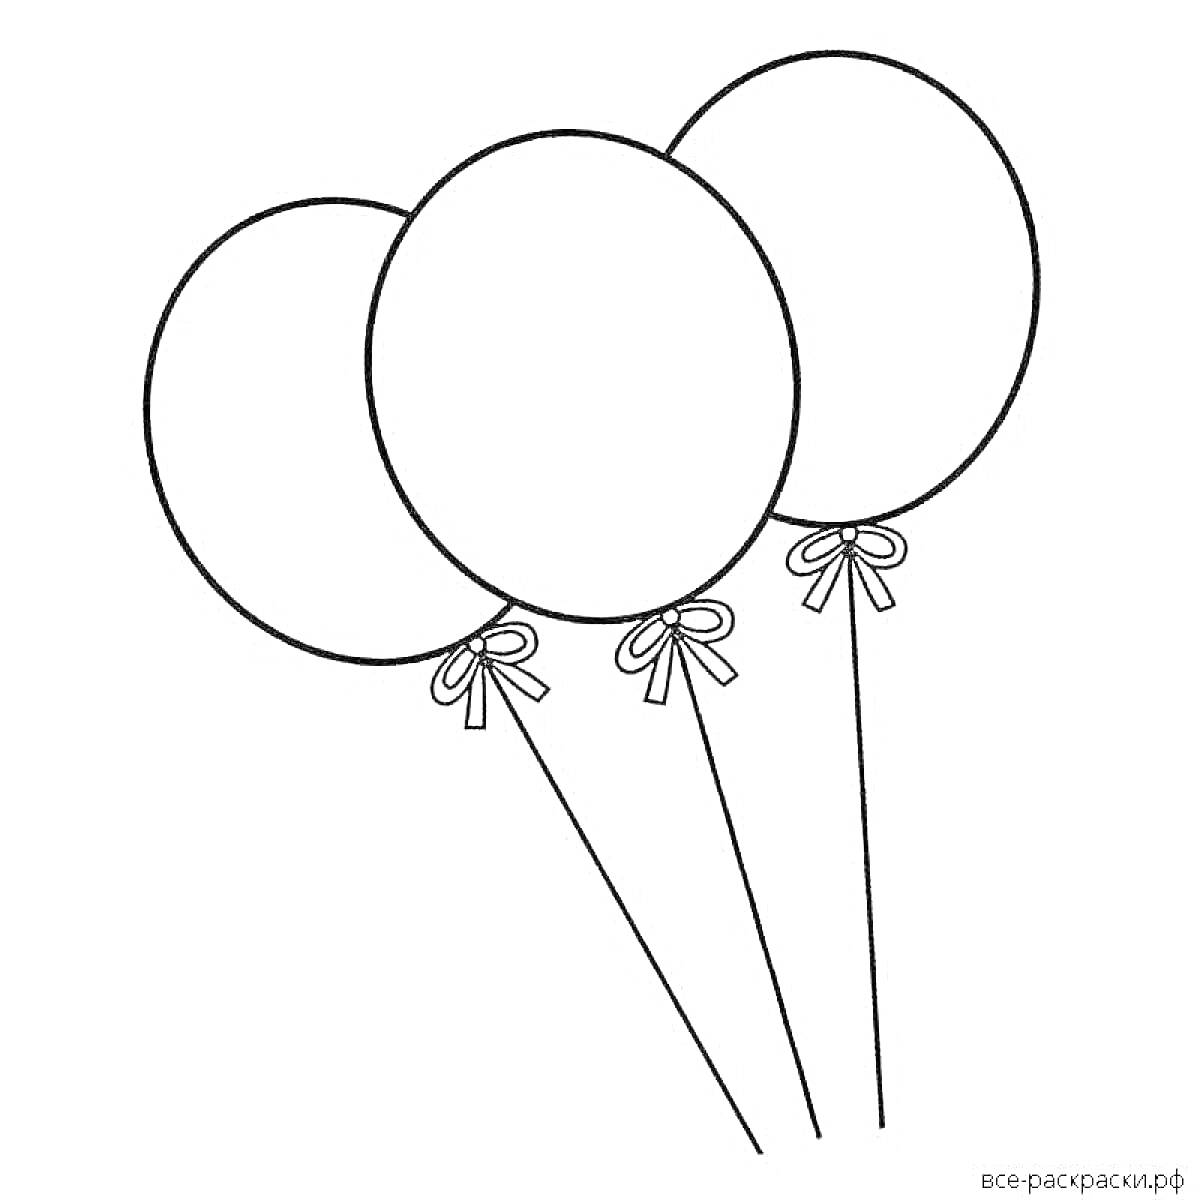 Три воздушных шарика с ленточками